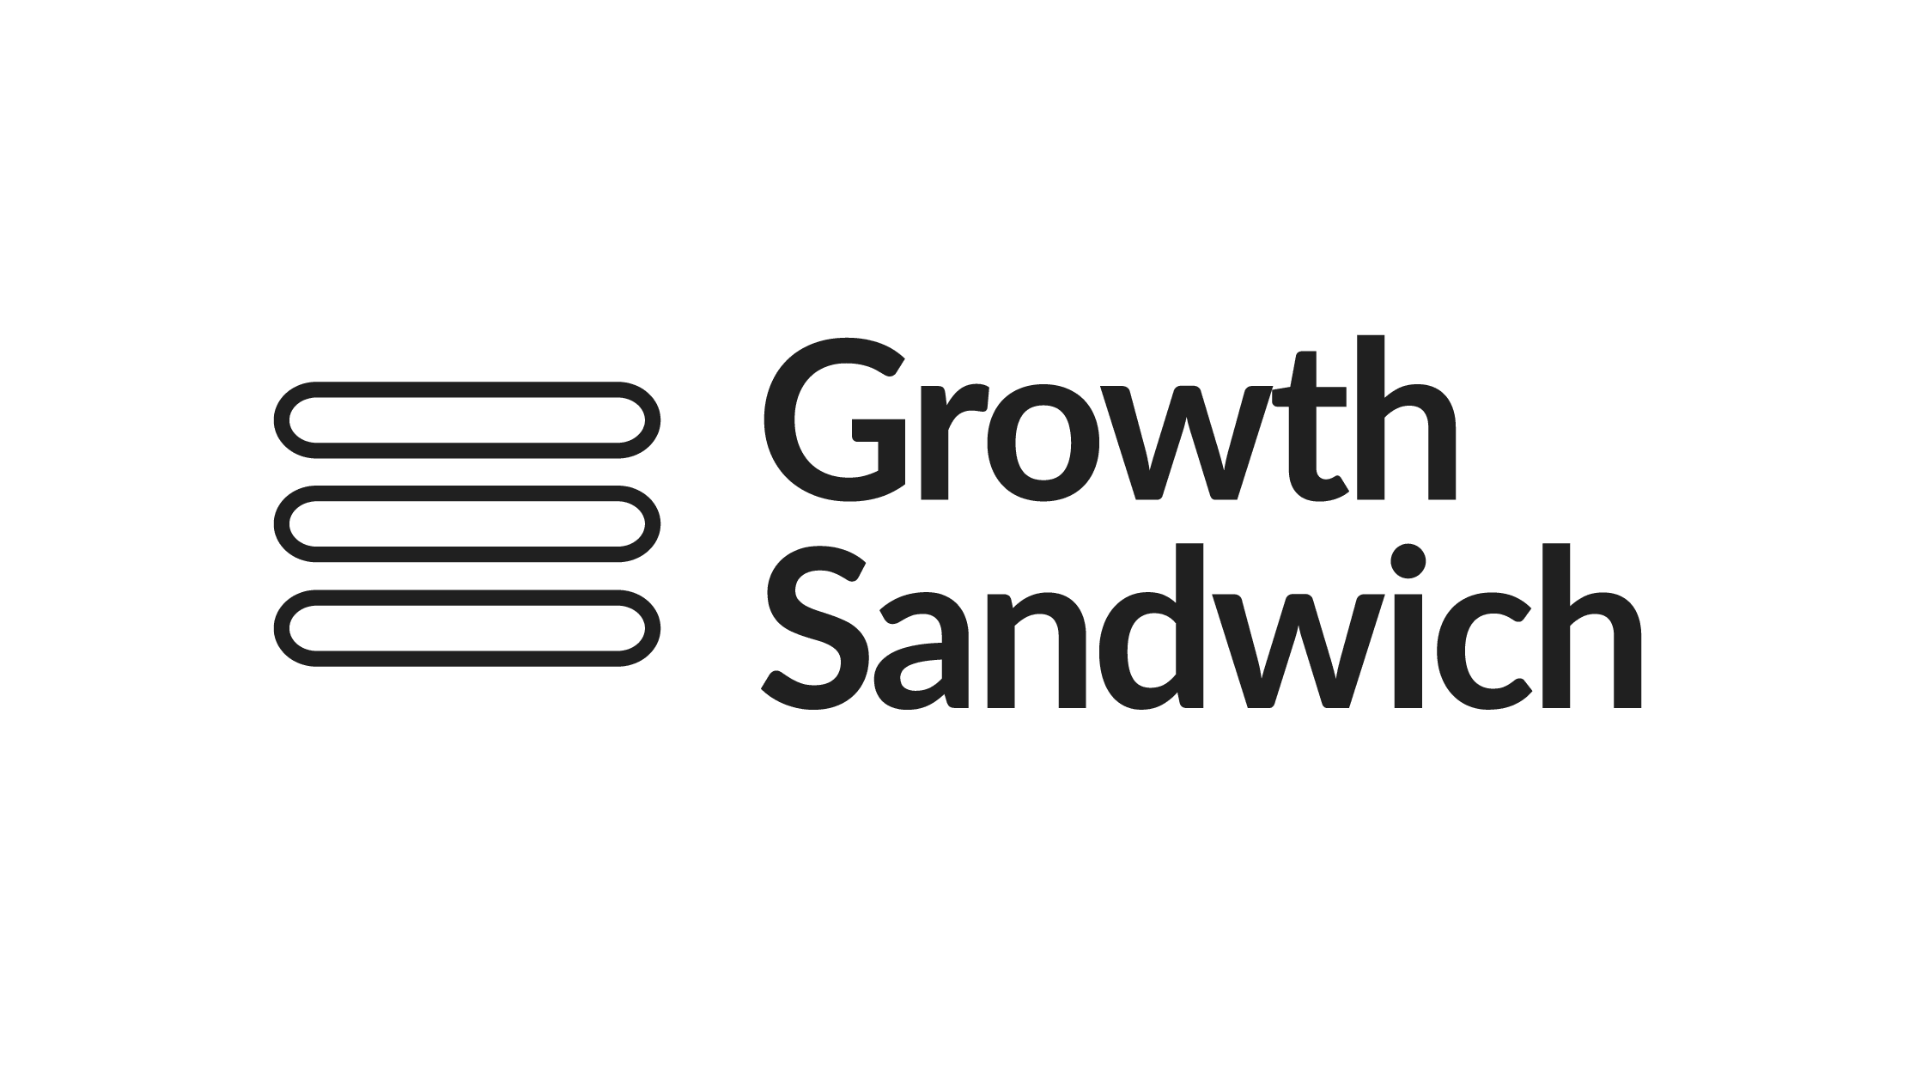 Growth Sandwich logo